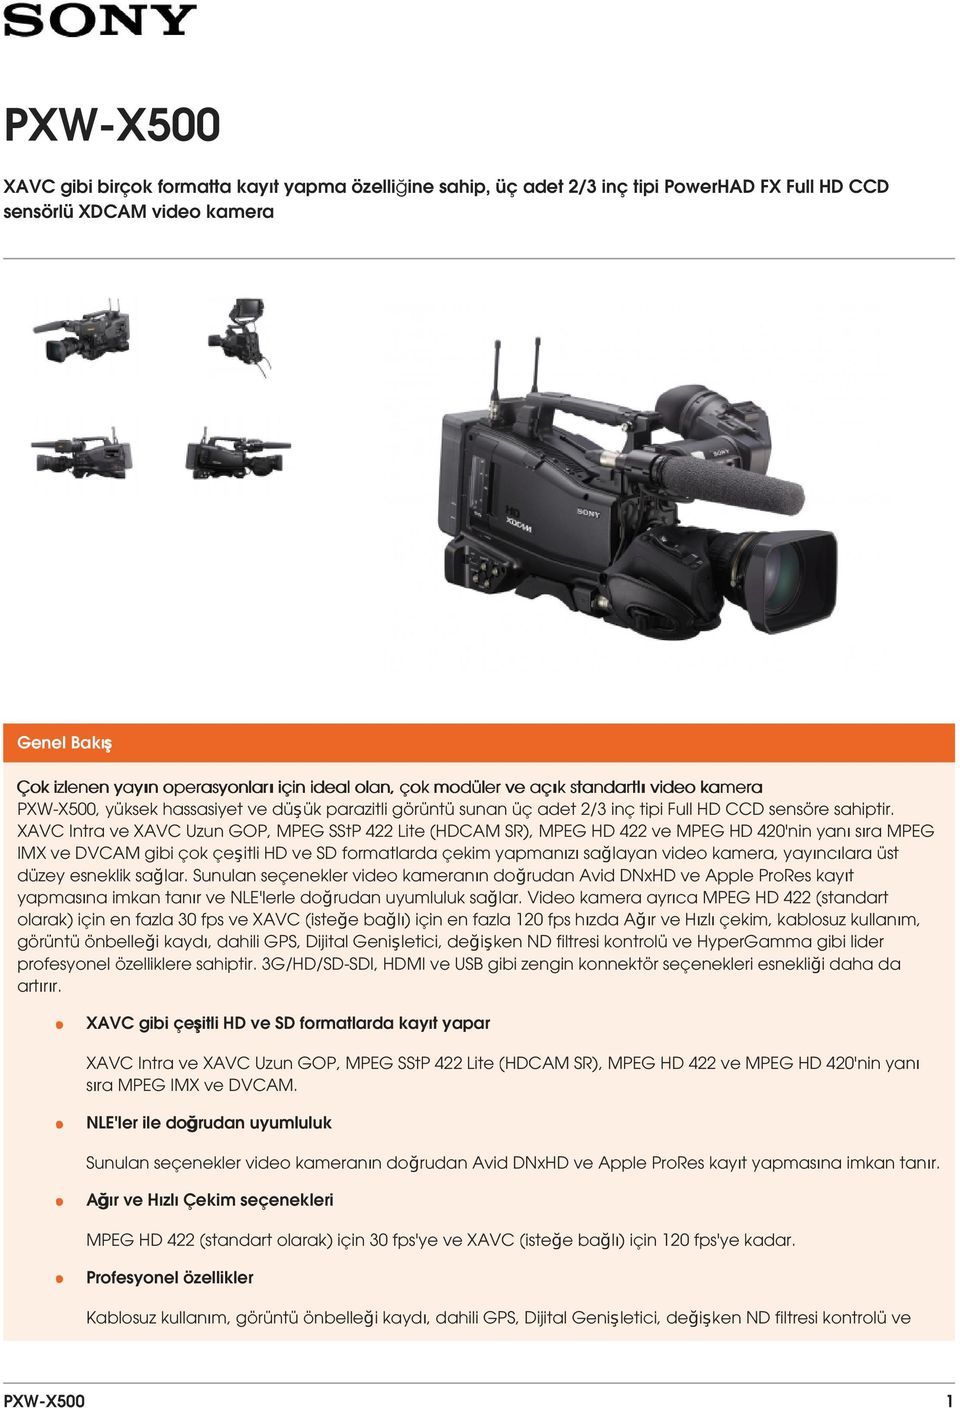 XAVC Intra ve XAVC Uzun GOP, MPEG SStP 422 Lite (HDCAM SR), MPEG HD 422 ve MPEG HD 420'nin yanı sıra MPEG IMX ve DVCAM gibi çok çeşitli HD ve SD formatlarda çekim yapmanızı sağlayan video kamera,